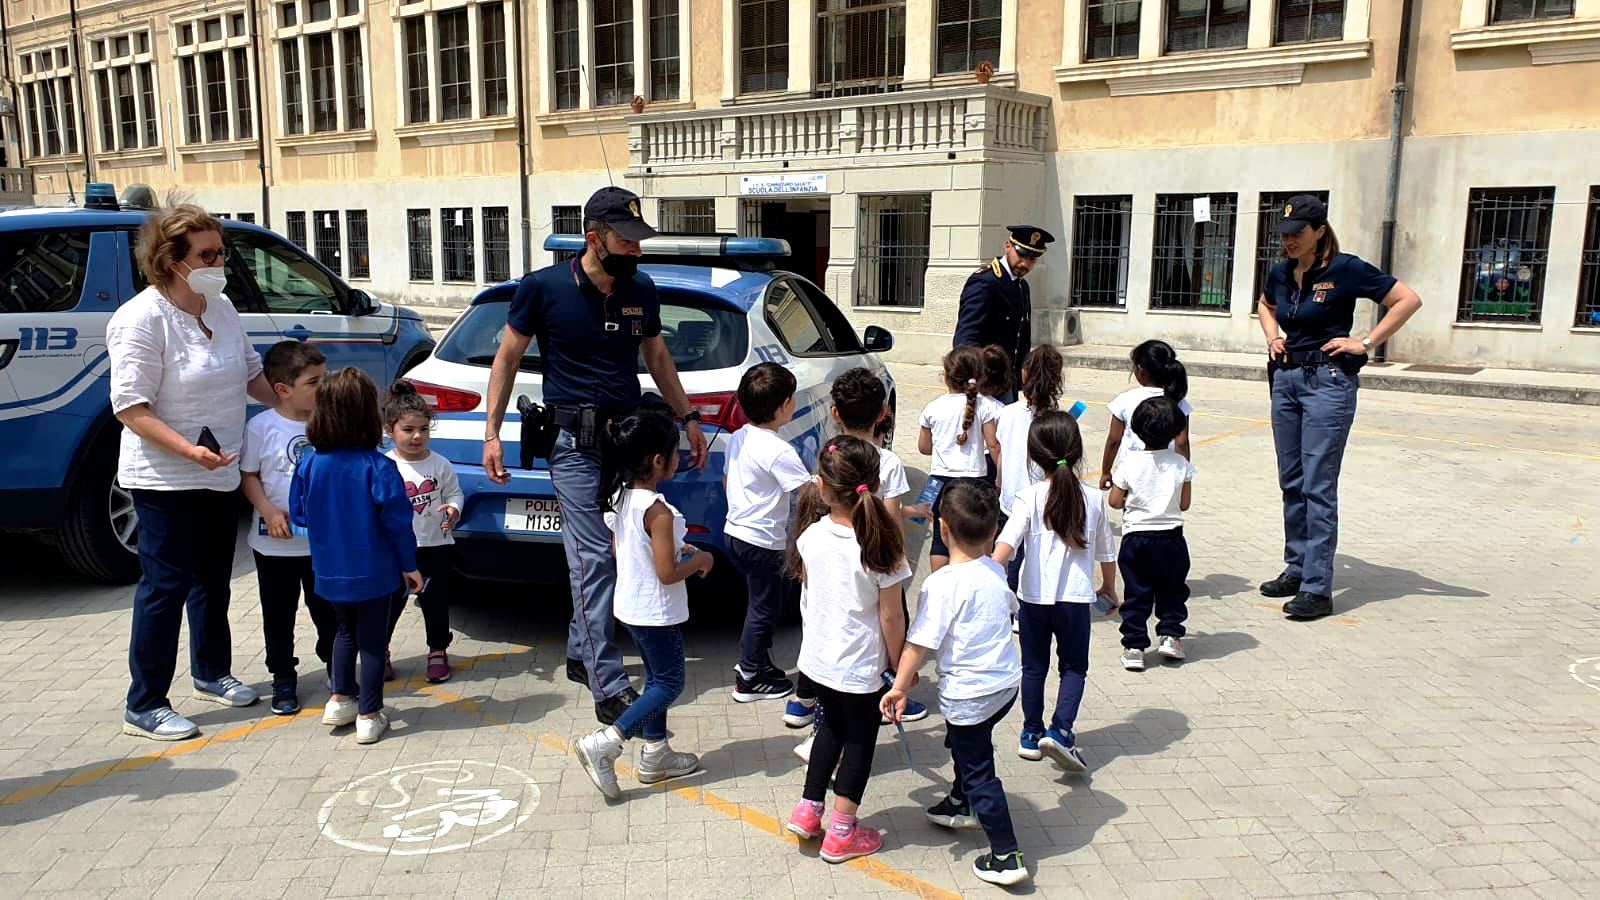 International Missing Children’s day. Campagna di informazione e sensibilizzazione della Polizia di Stato rivolta ai bambini e agli adolescenti. La Questura di Messina, in piazza e a scuola, vicini alla gente.